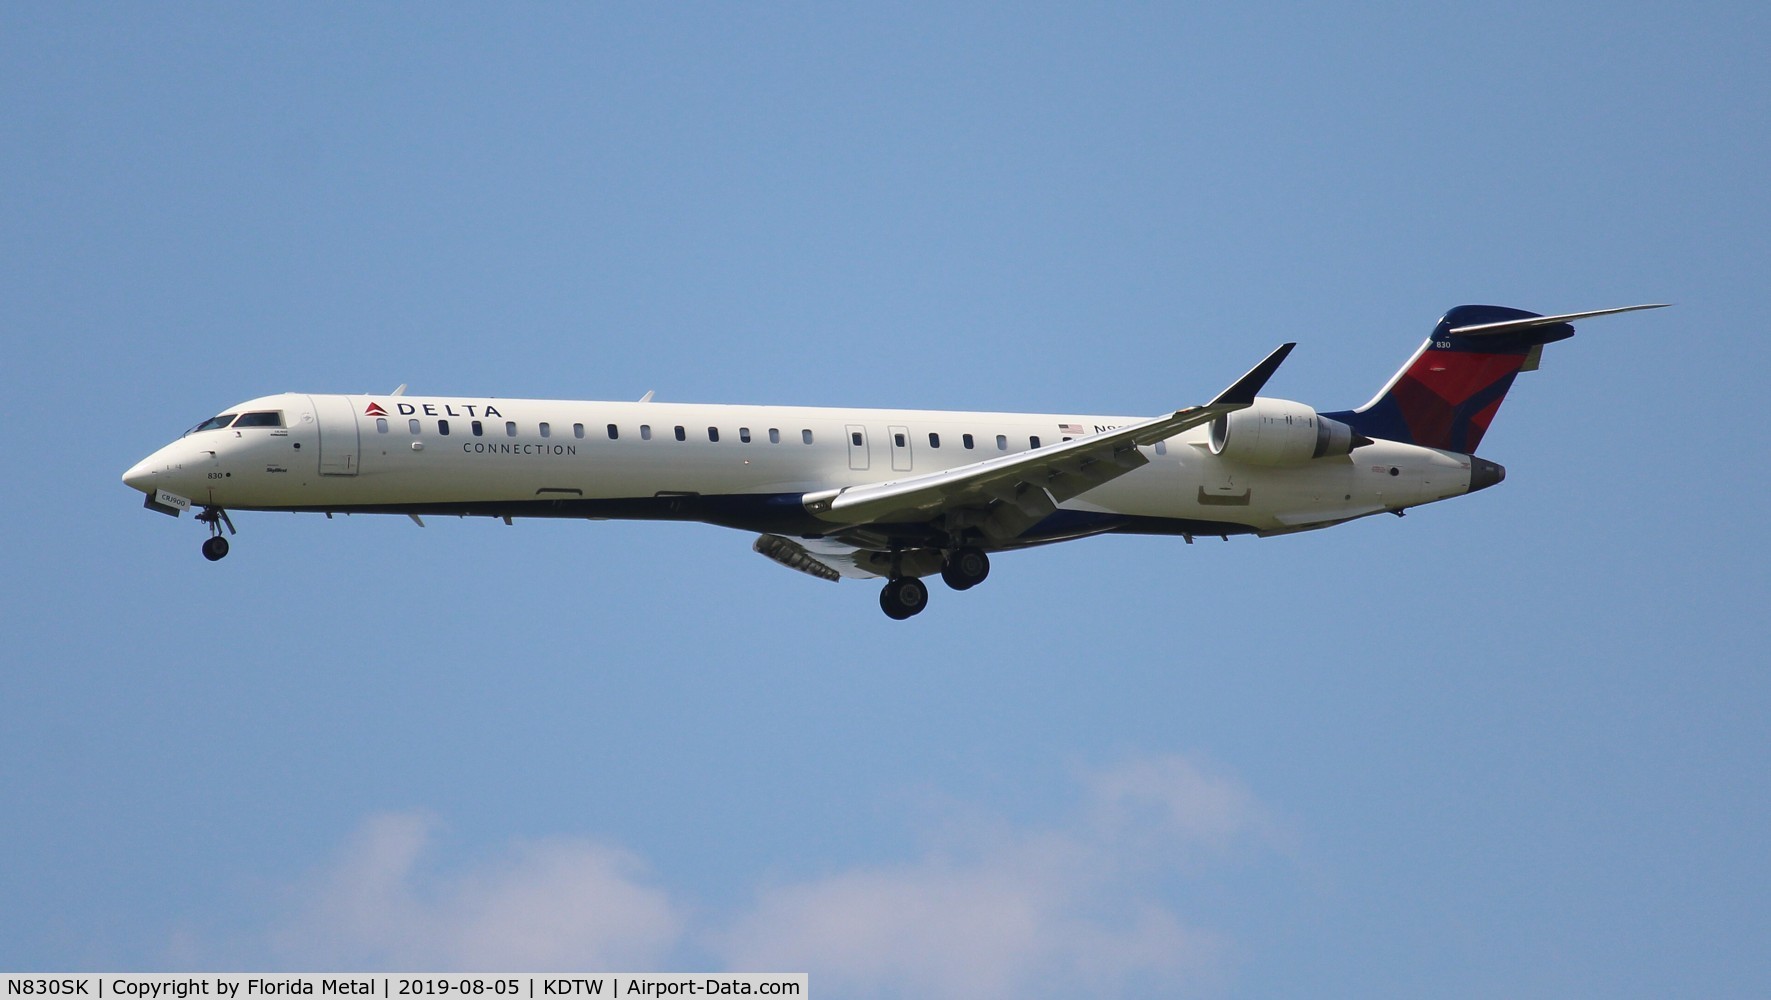 N830SK, 2018 Bombardier CRJ-900LR (CL-600-2D24) C/N 15453, Delta Connection